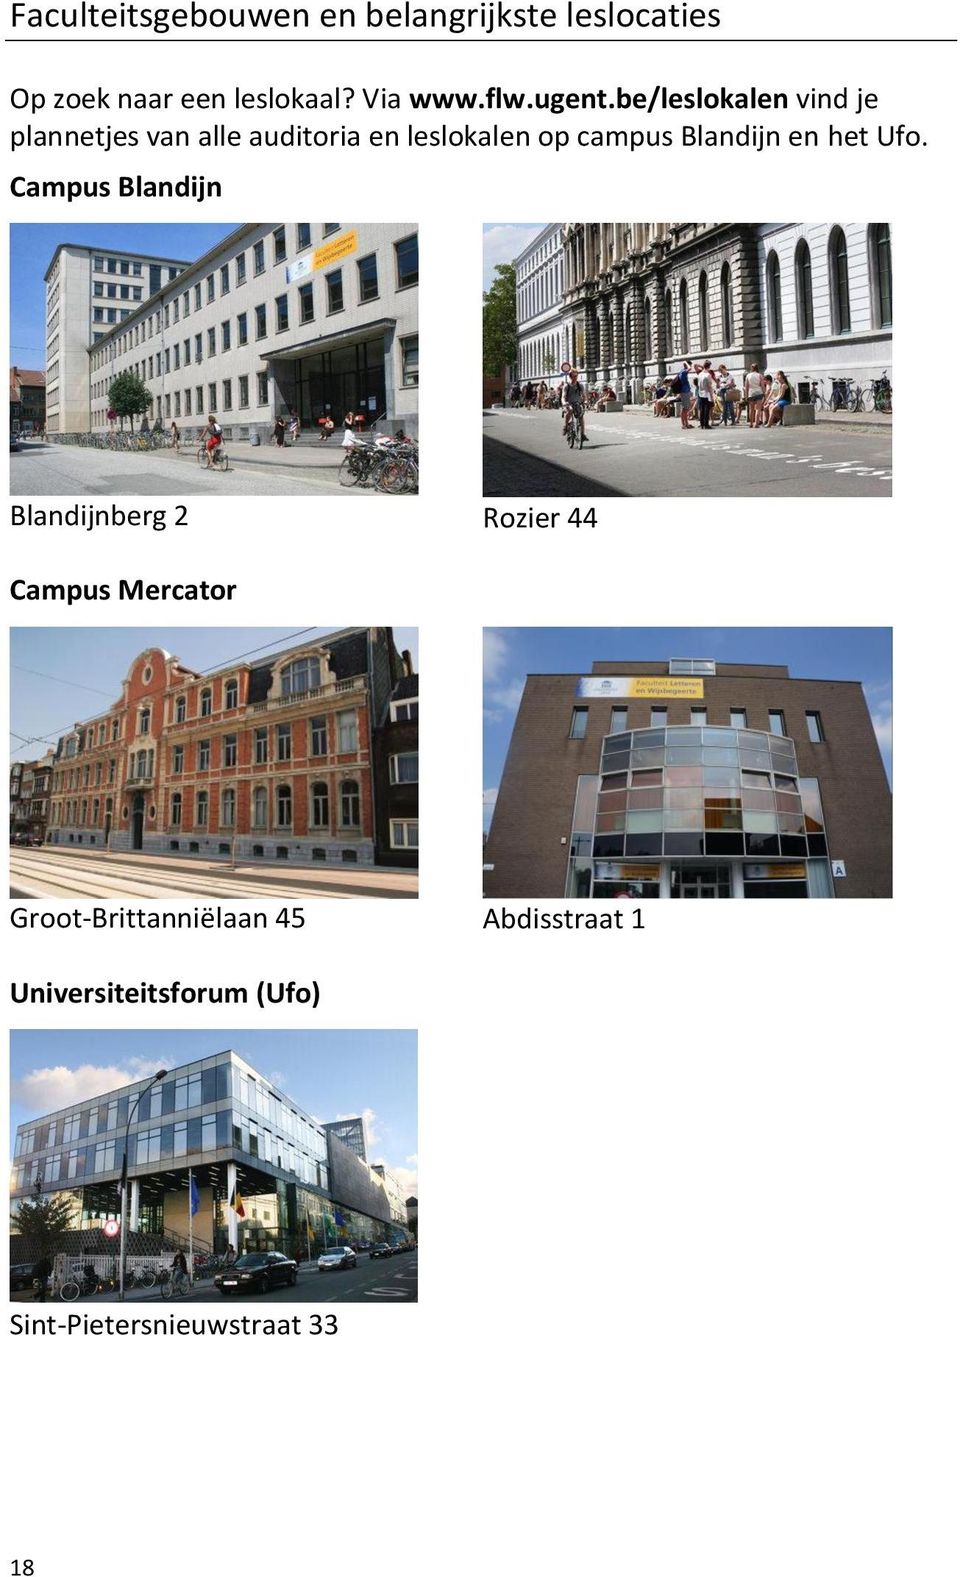 be/leslokalen vind je plannetjes van alle auditoria en leslokalen op campus Blandijn